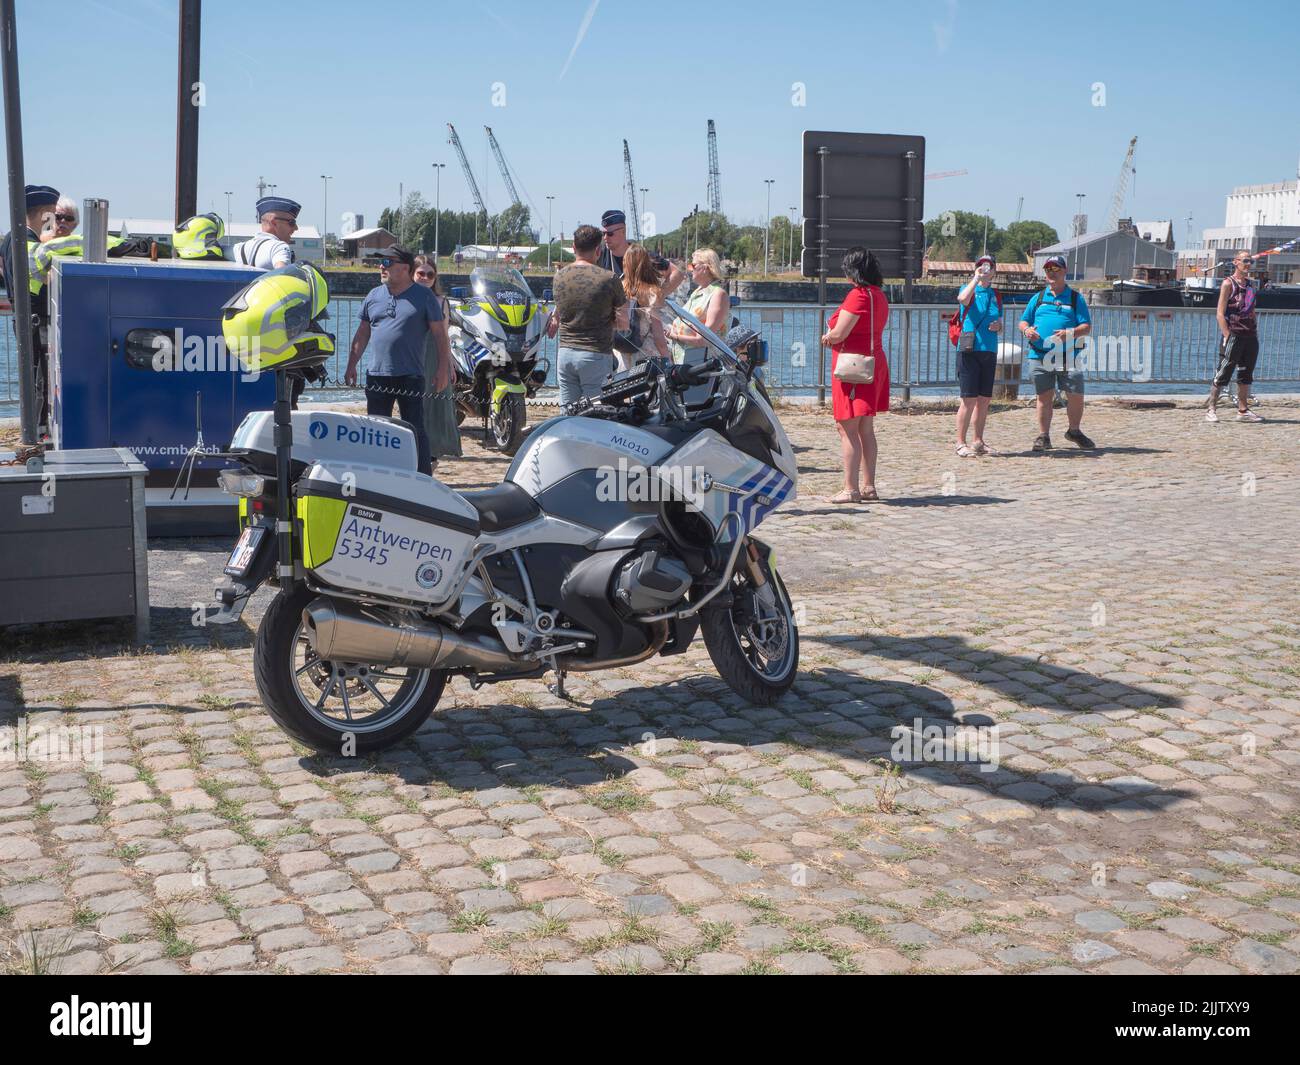 Anversa, Belgio, 24 luglio 2022, la motocicletta belga della polizia di Anversa è parcheggiata al molo Foto Stock